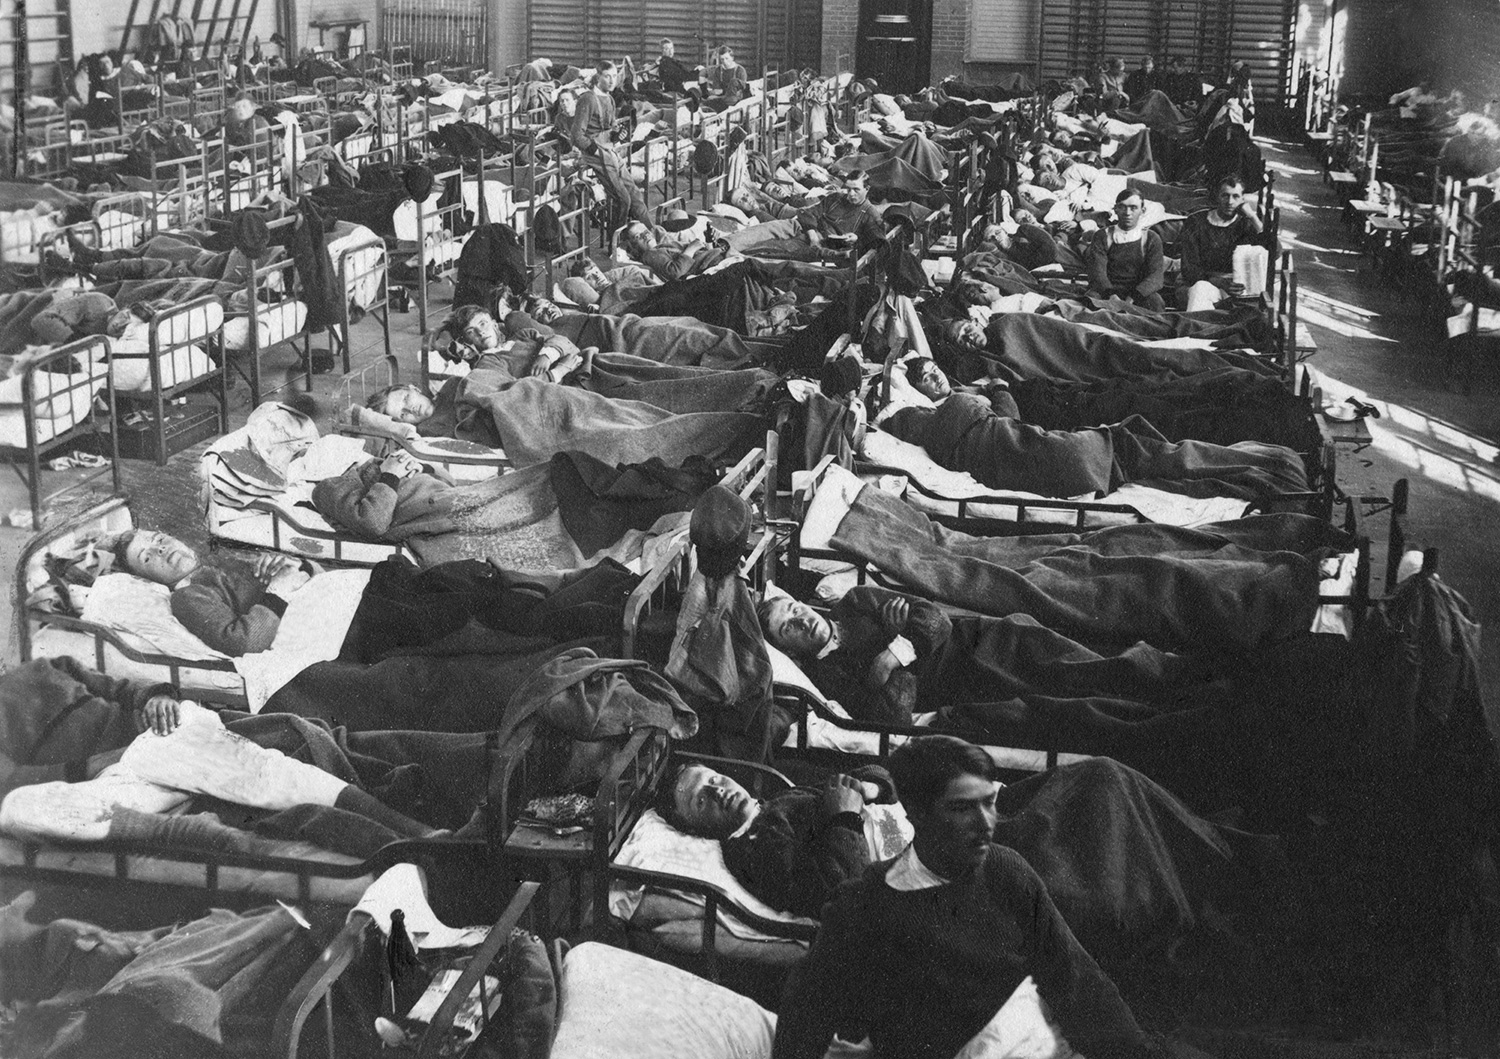 Patienter ligger i sängar i långa rader, svartvit bild